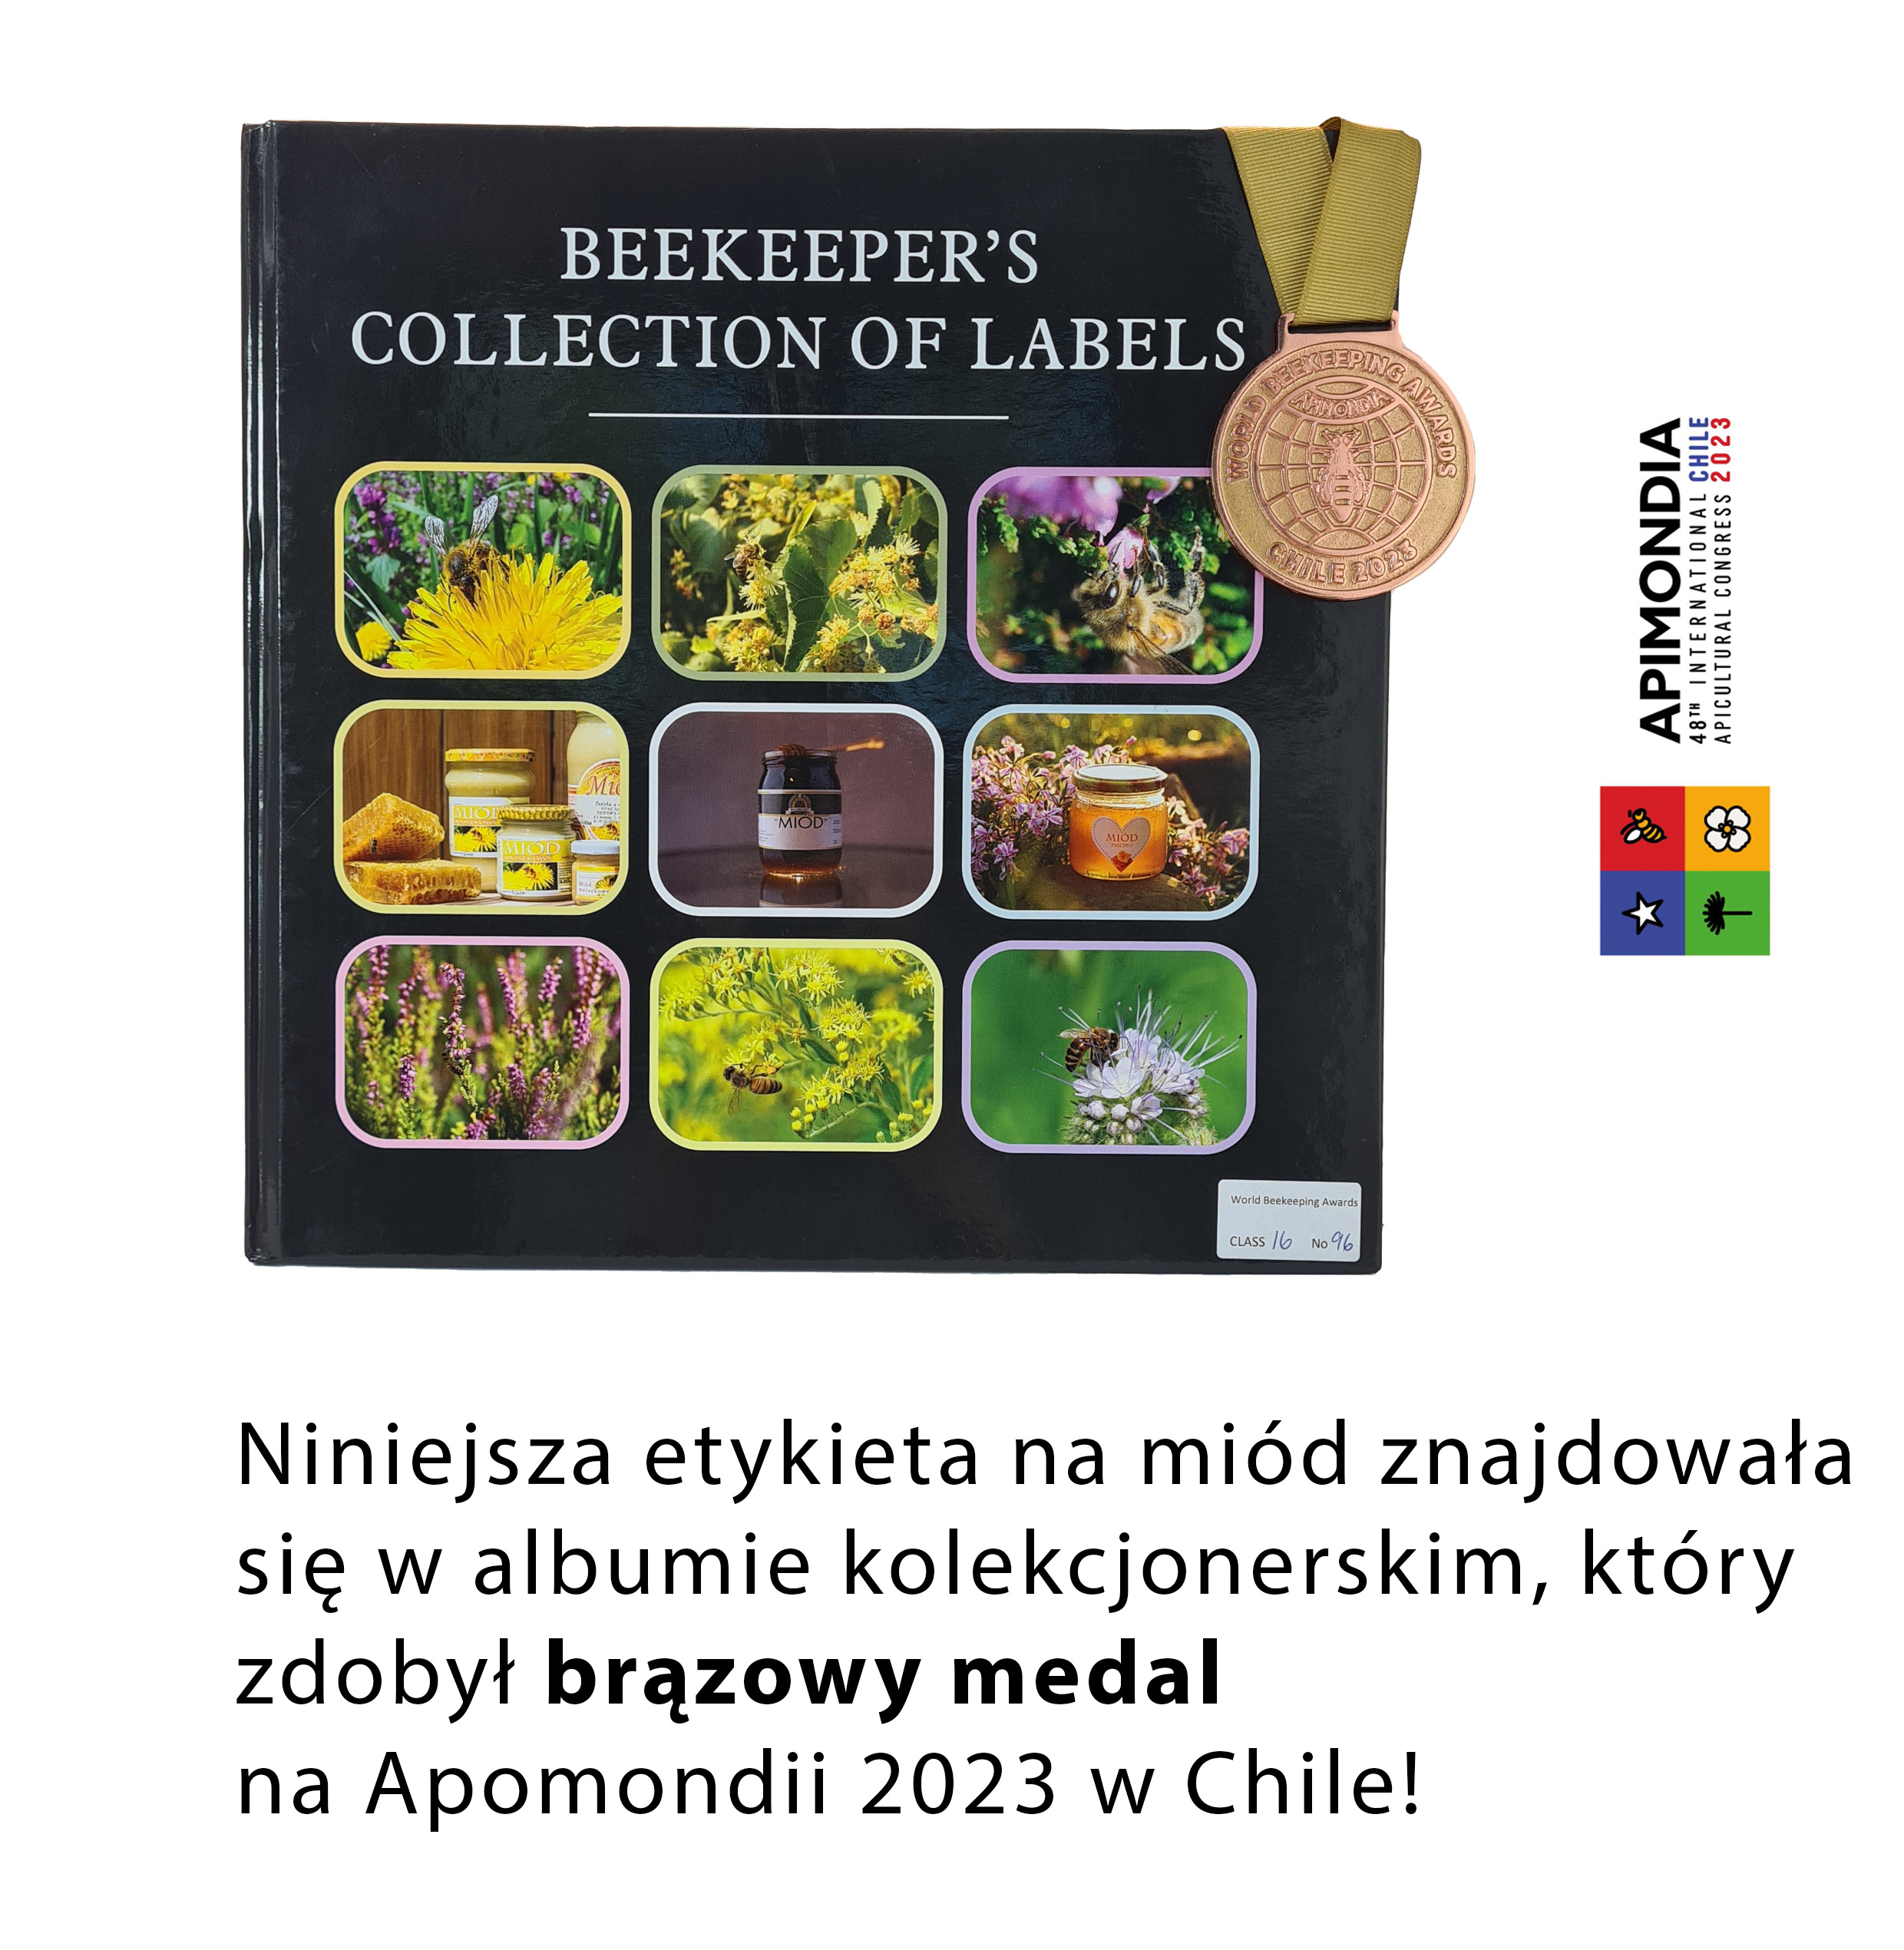 Apimondia 2023 - brązowy meal za album z etykietami